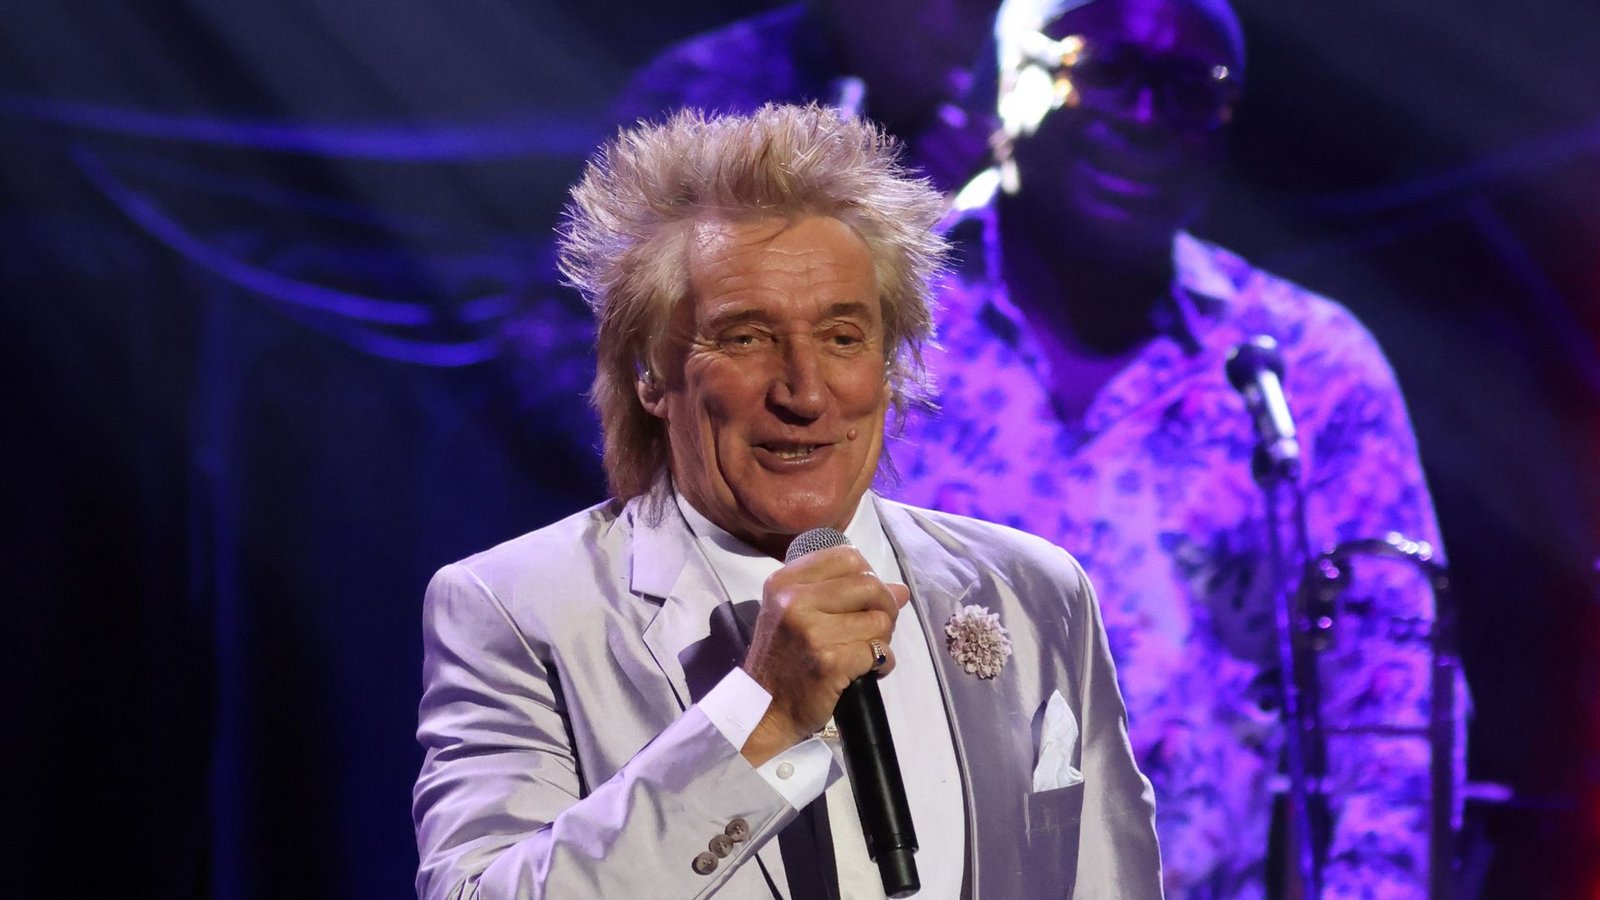 Der britische Sänger Rod Stewart hat überraschend in einer Sendung von Sky News angerufen.Foto: Suzan Moore/PA Wire/dpa/Archiv